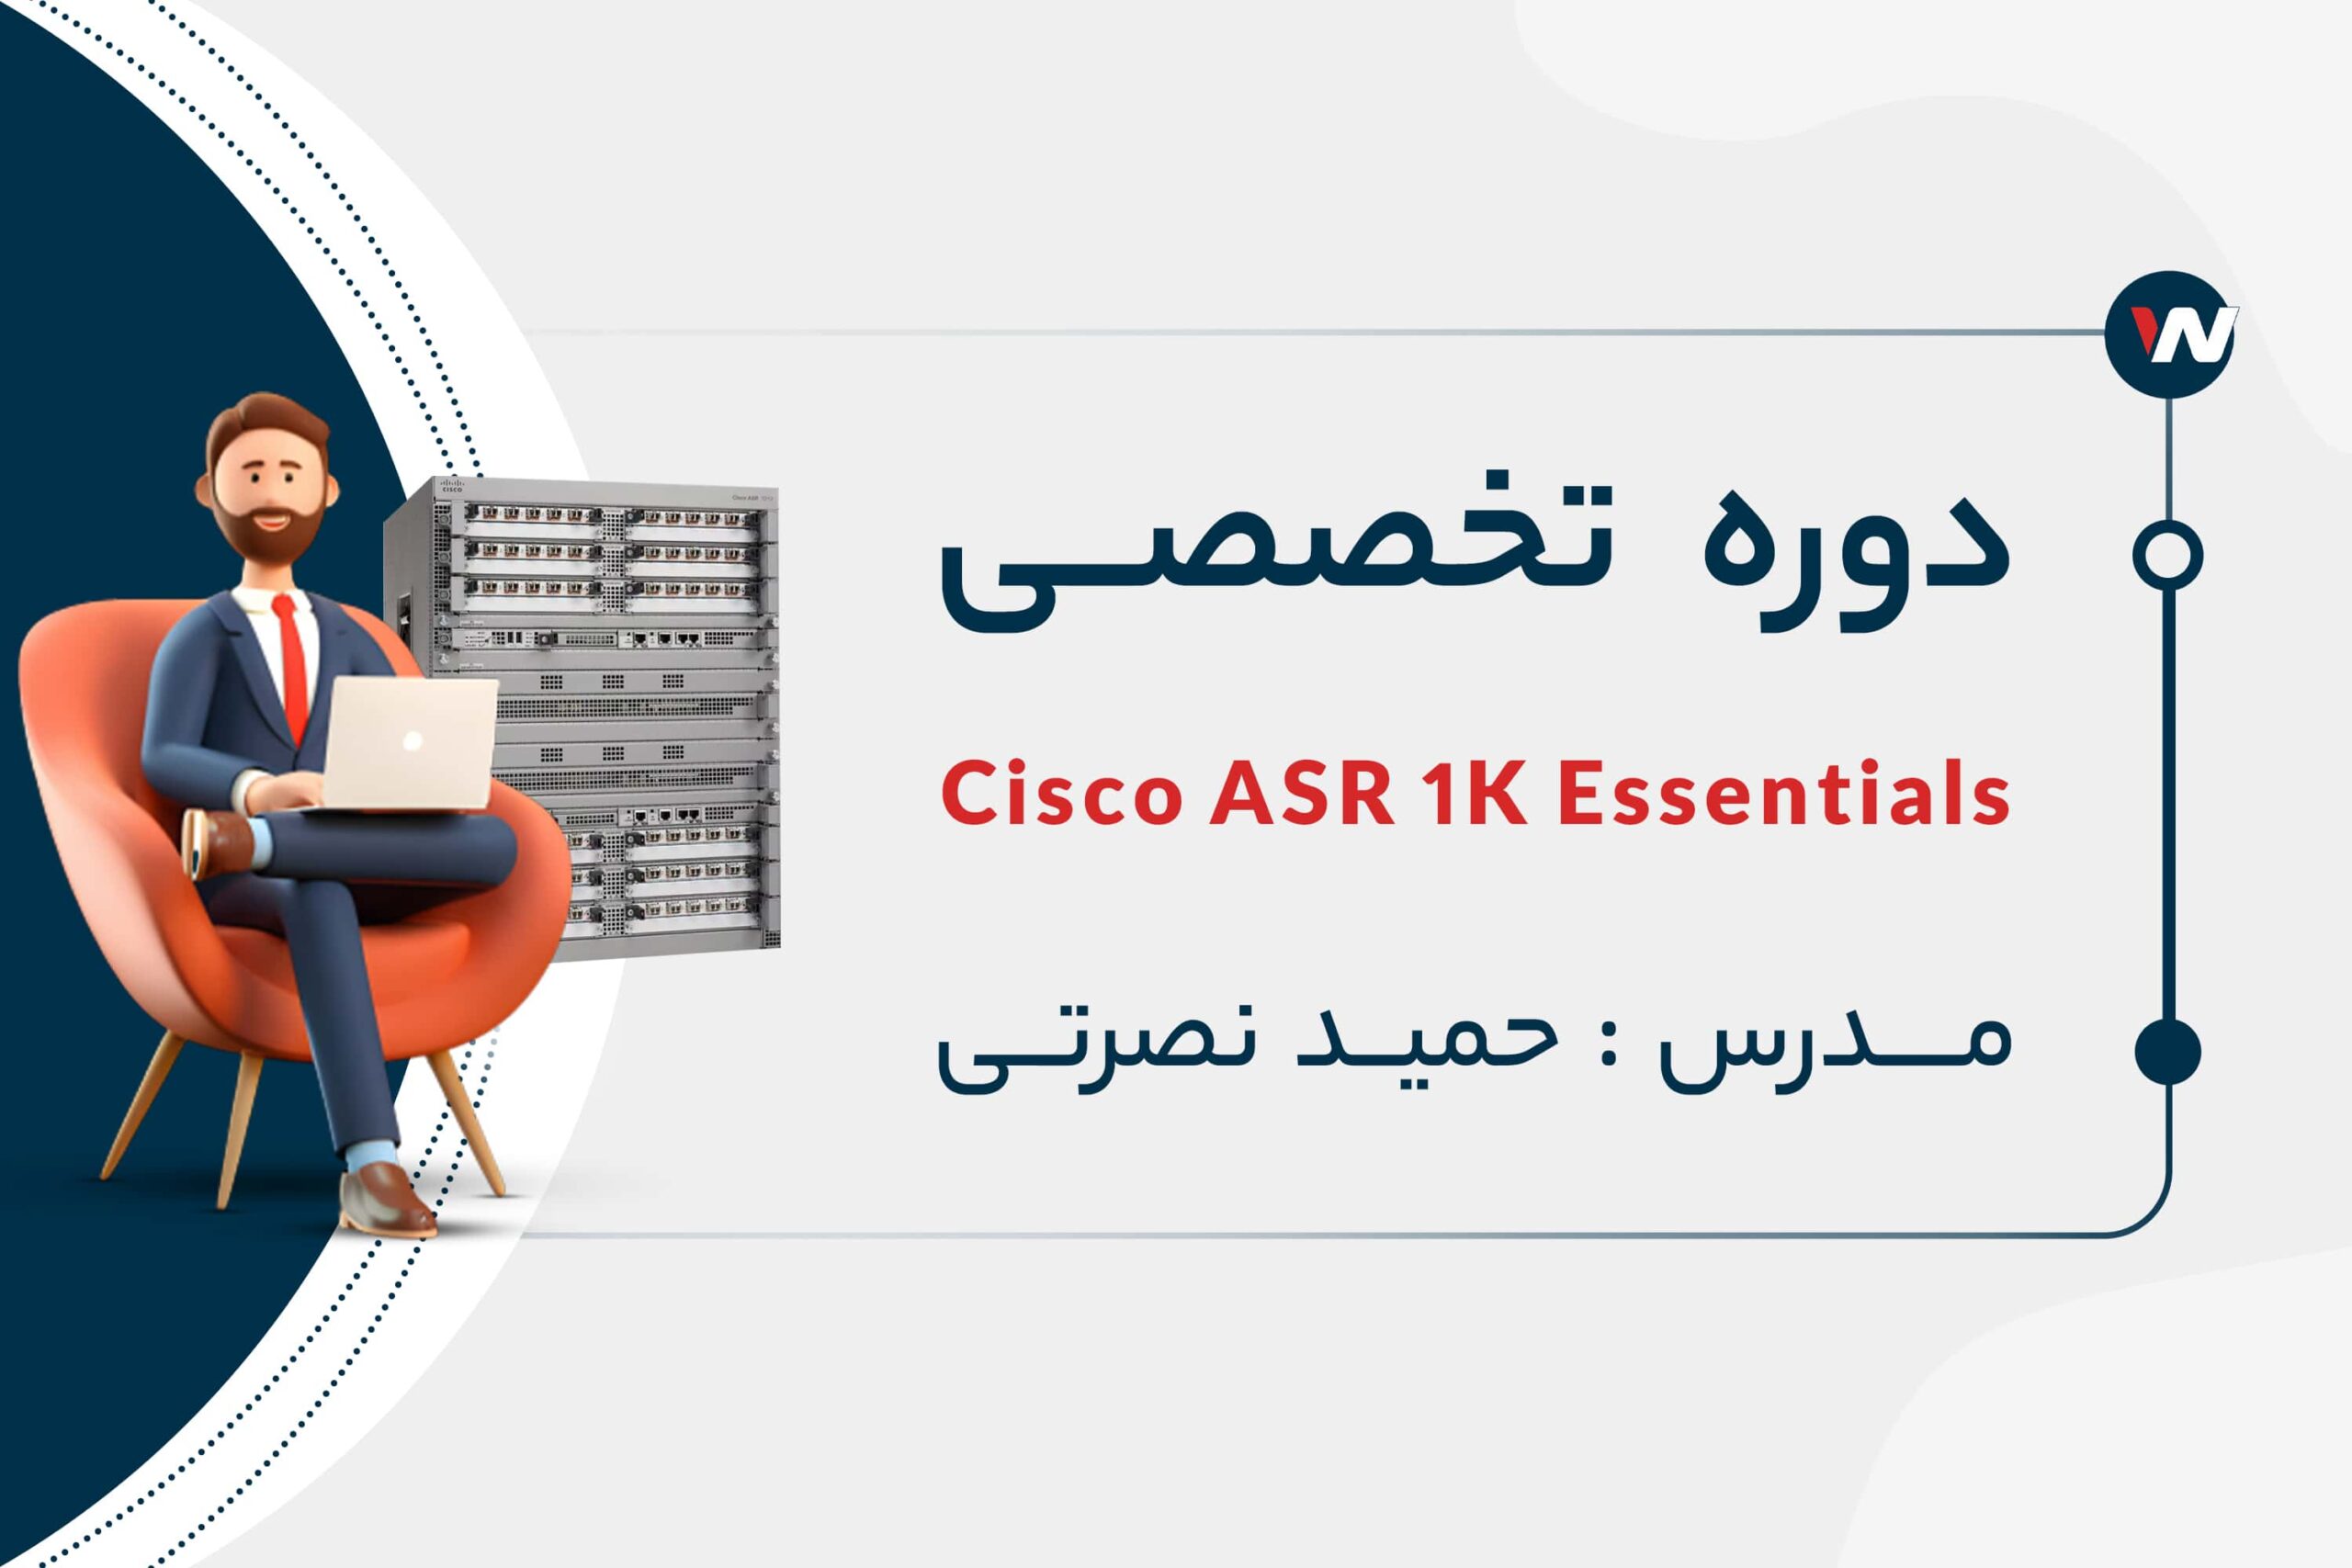 دوره ی تخصصی Cisco ASR 1000 Series Essentials با تدریس حمید نصرتی